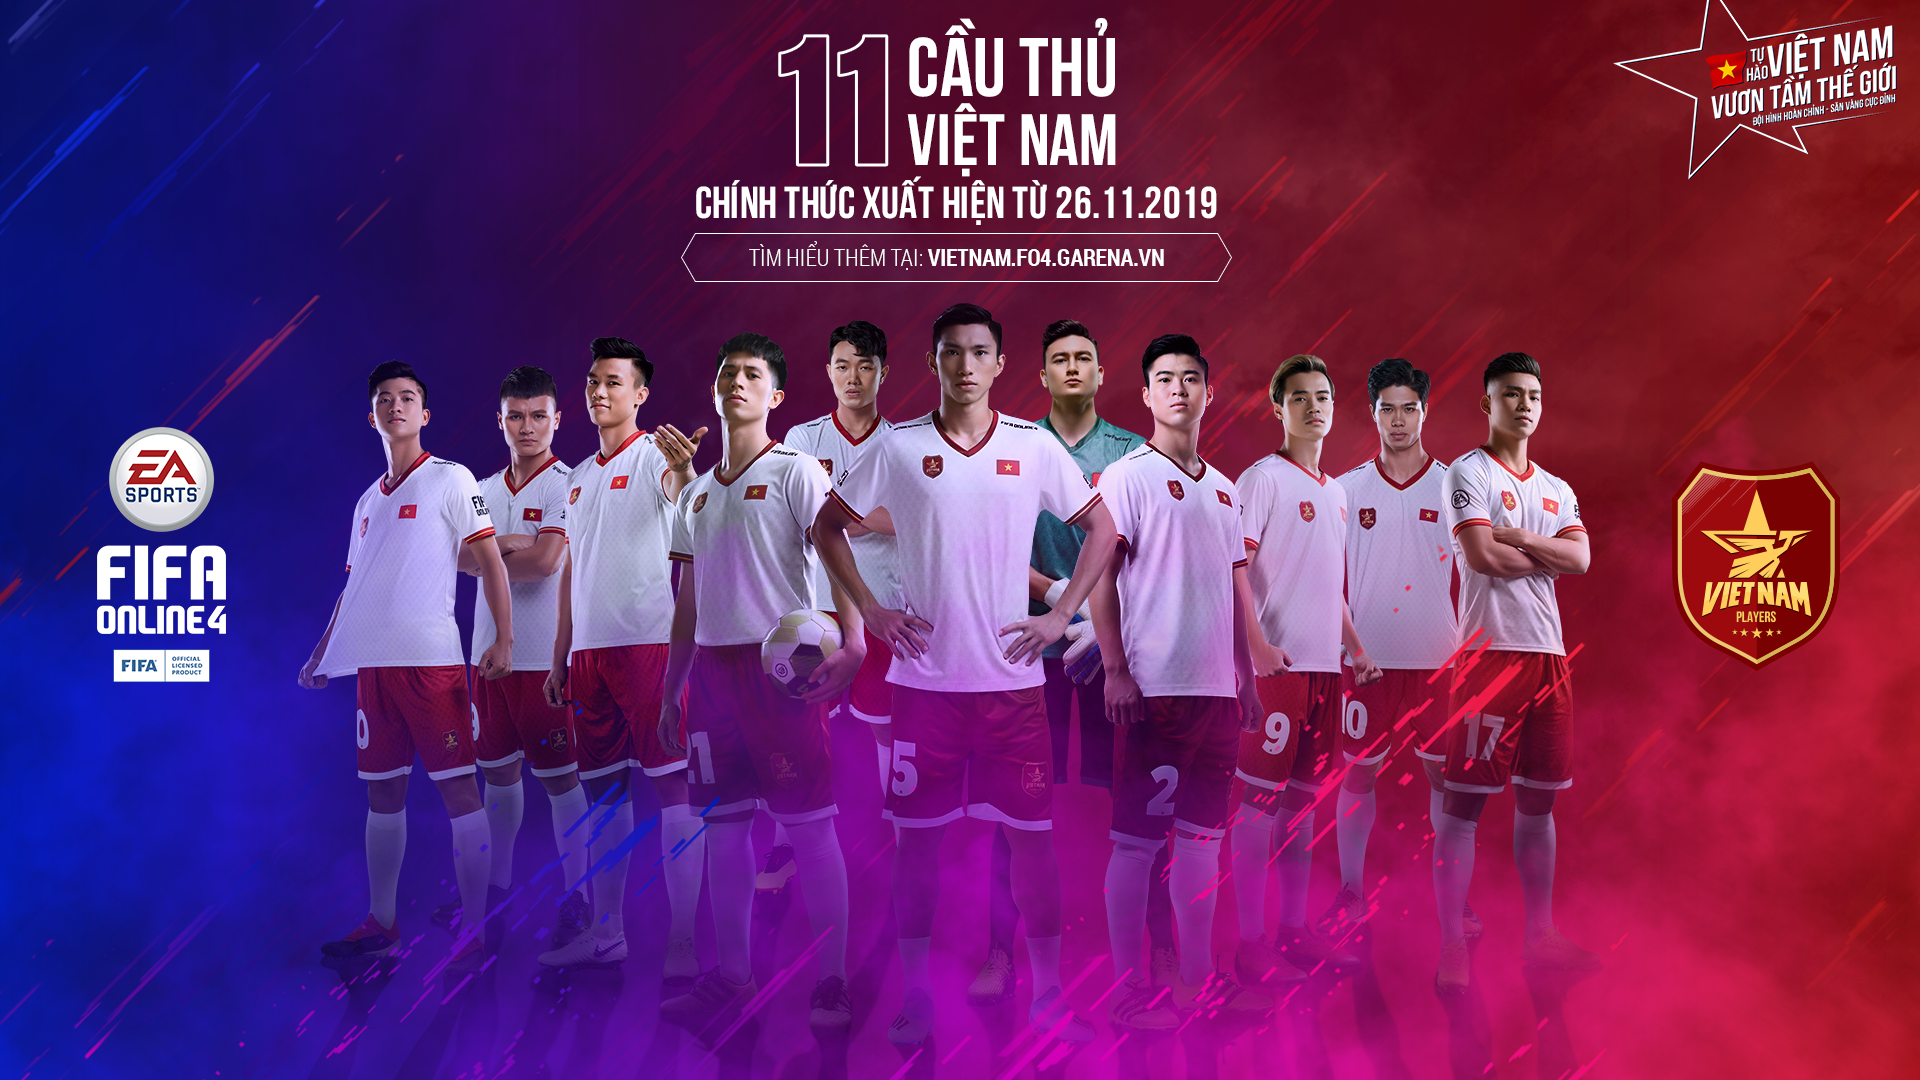 FIFA Online 4 Việt Nam – FIFA Online 4 công bố tăng 3 chỉ số cho các cầu  thủ Việt Nam trong game